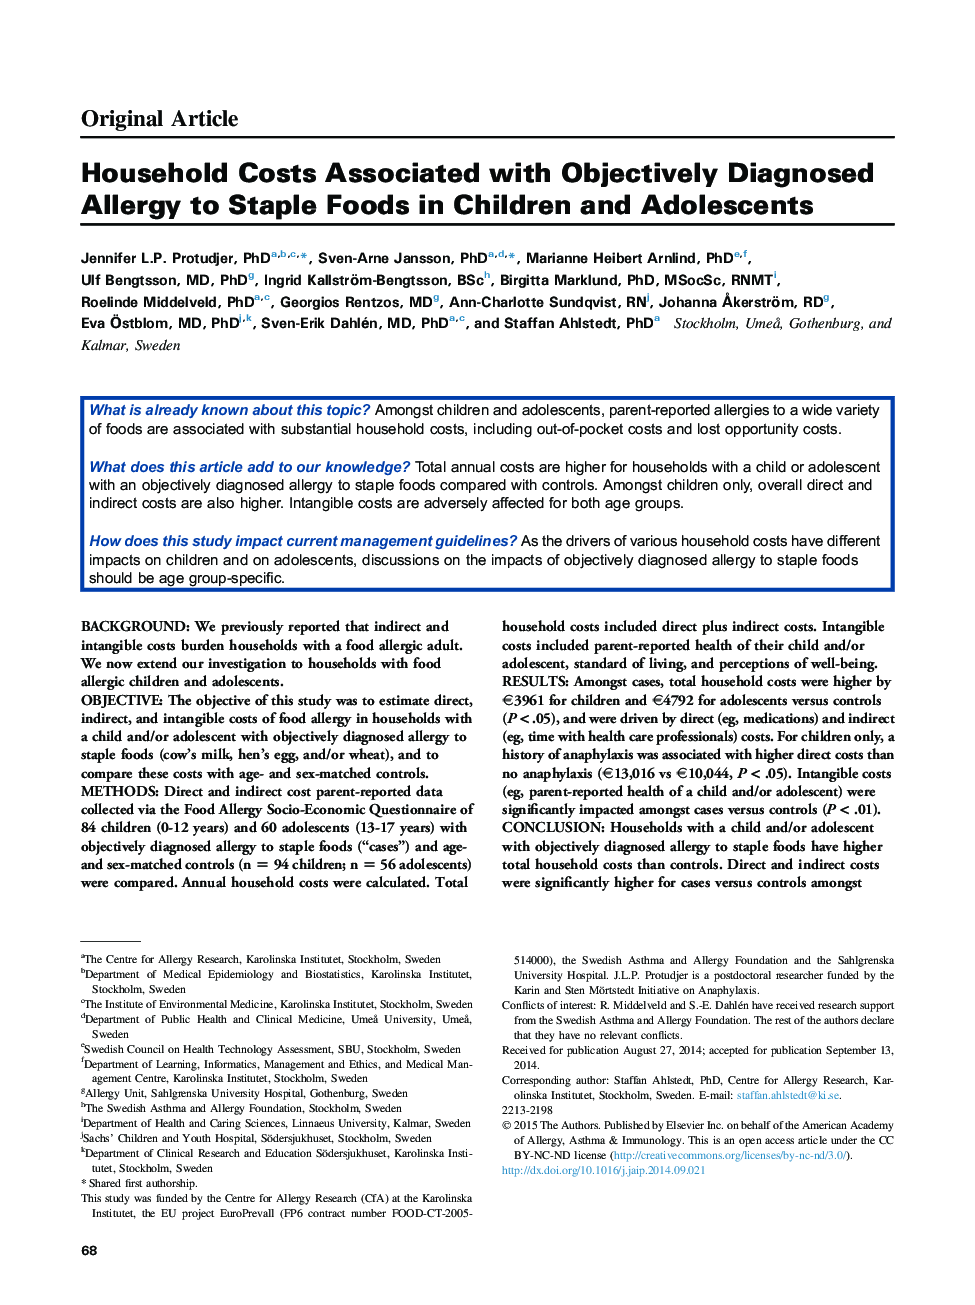 هزینه های خانگی مرتبط با علت آلرژی به مواد غذایی مداوم در کودکان و نوجوانان 